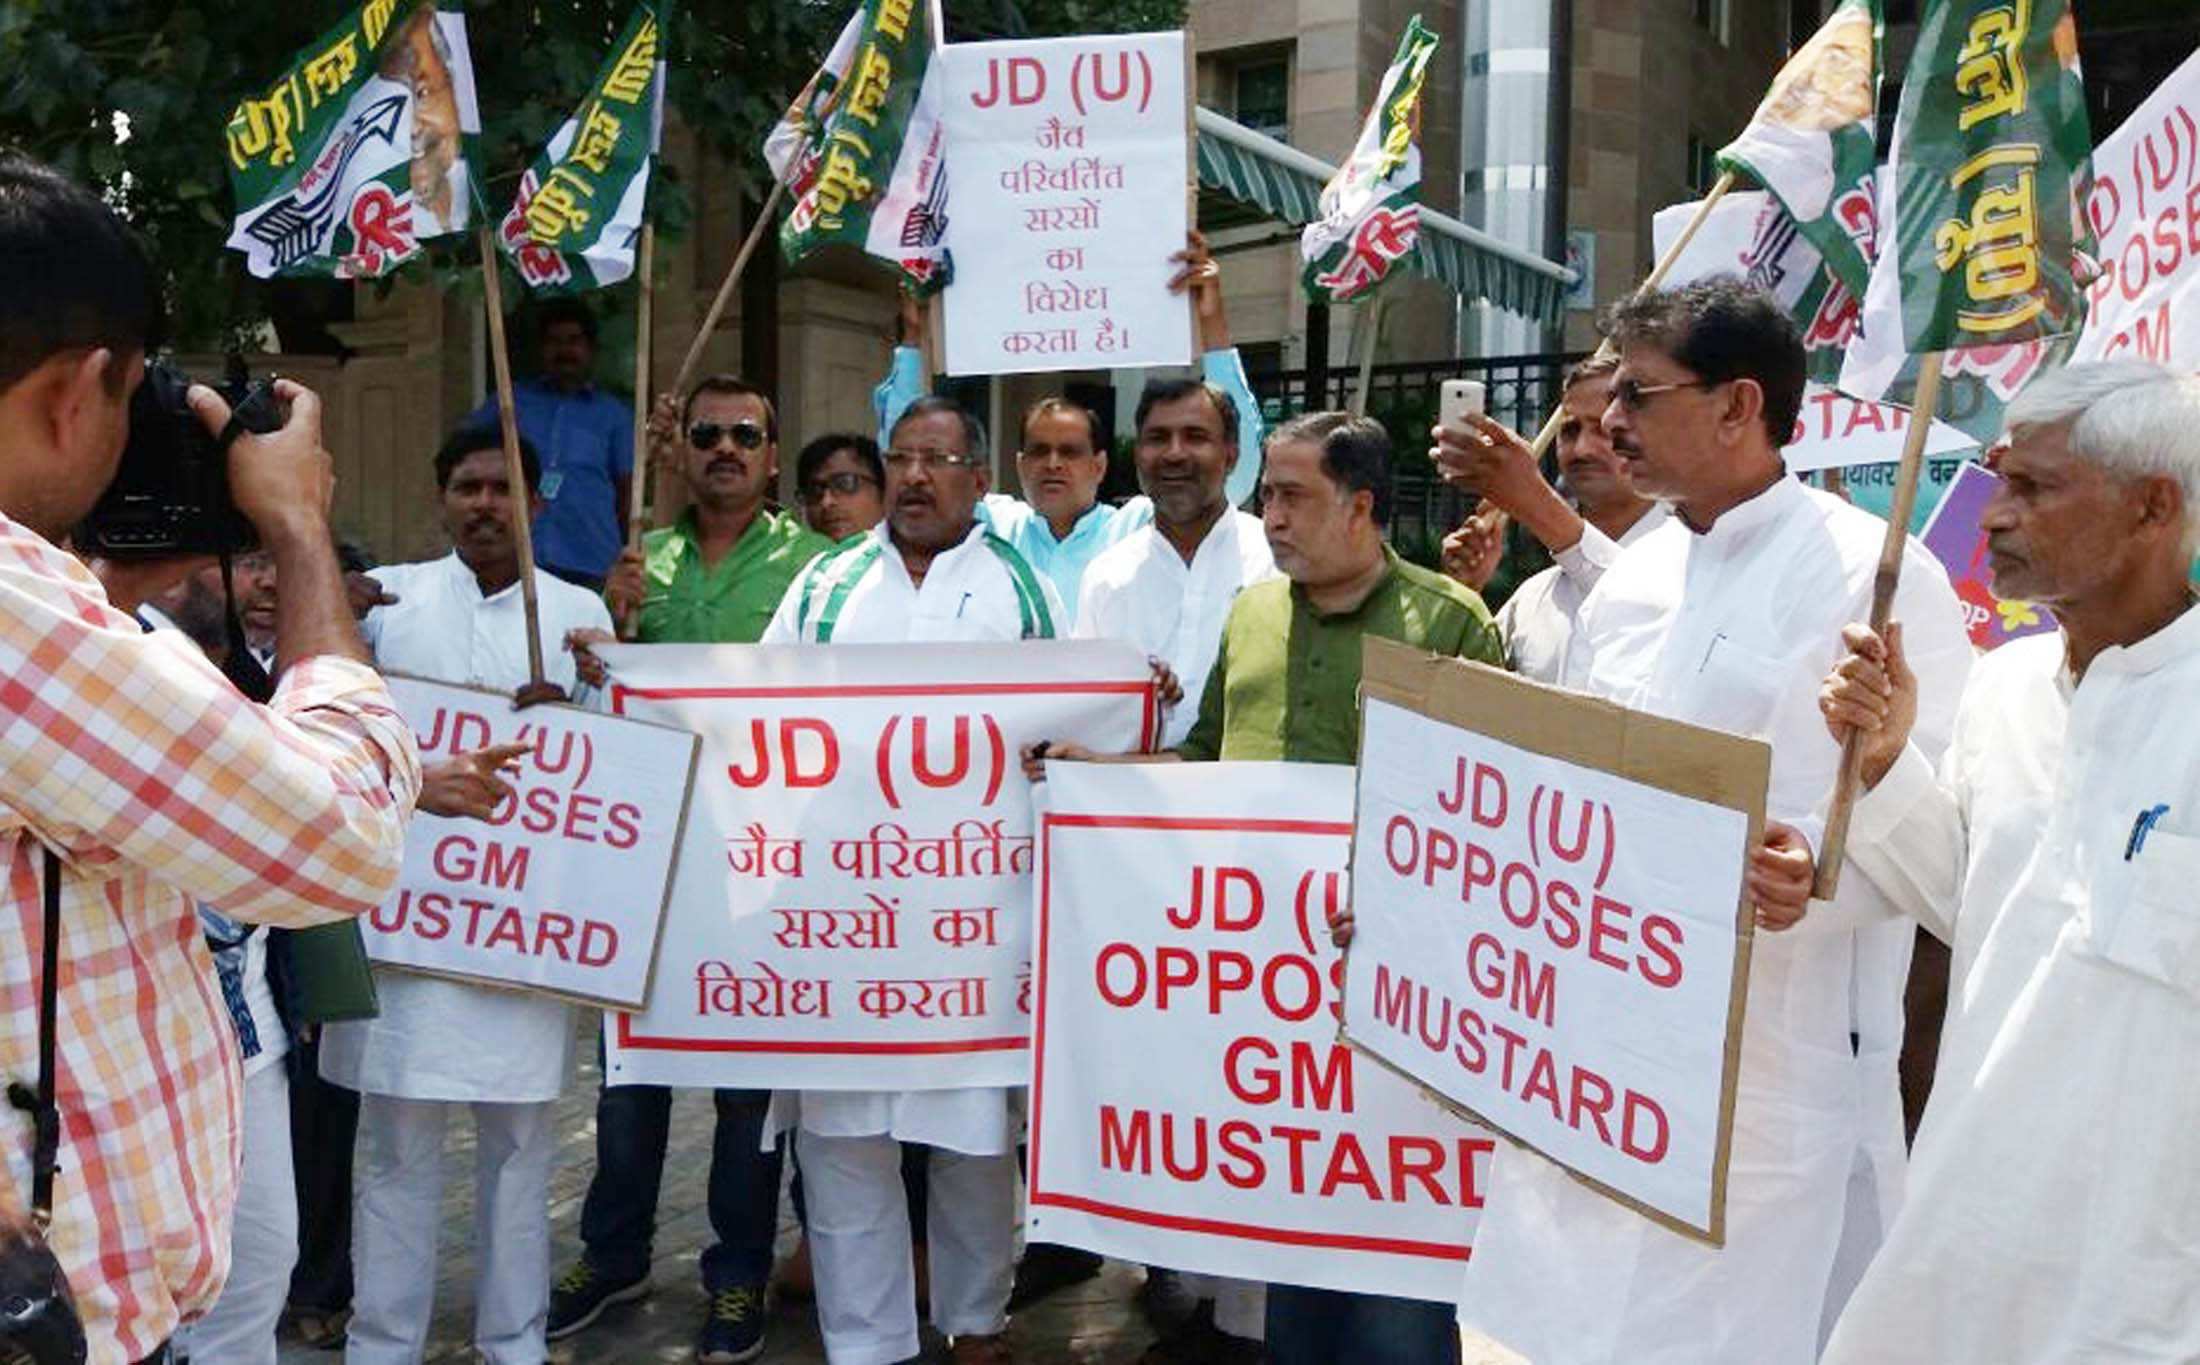 JD(U) leaders demonstrate against GM mustard in New Delhi. Photo: UNI